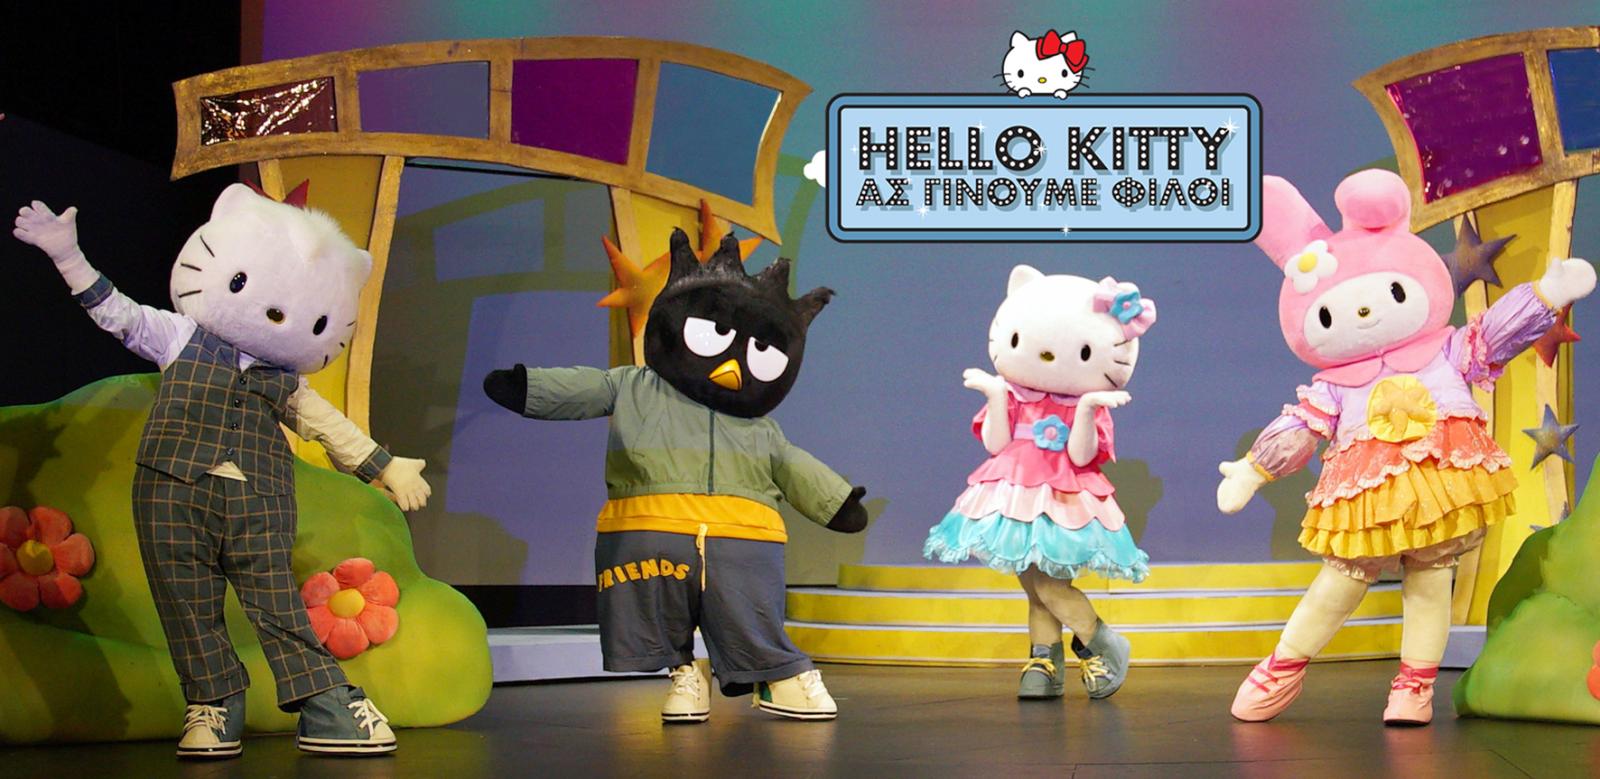 Η διαδραστική παράσταση "Hello Kitty, Ας γίνουμε φίλοι" στο Θέατρο Σοφούλη